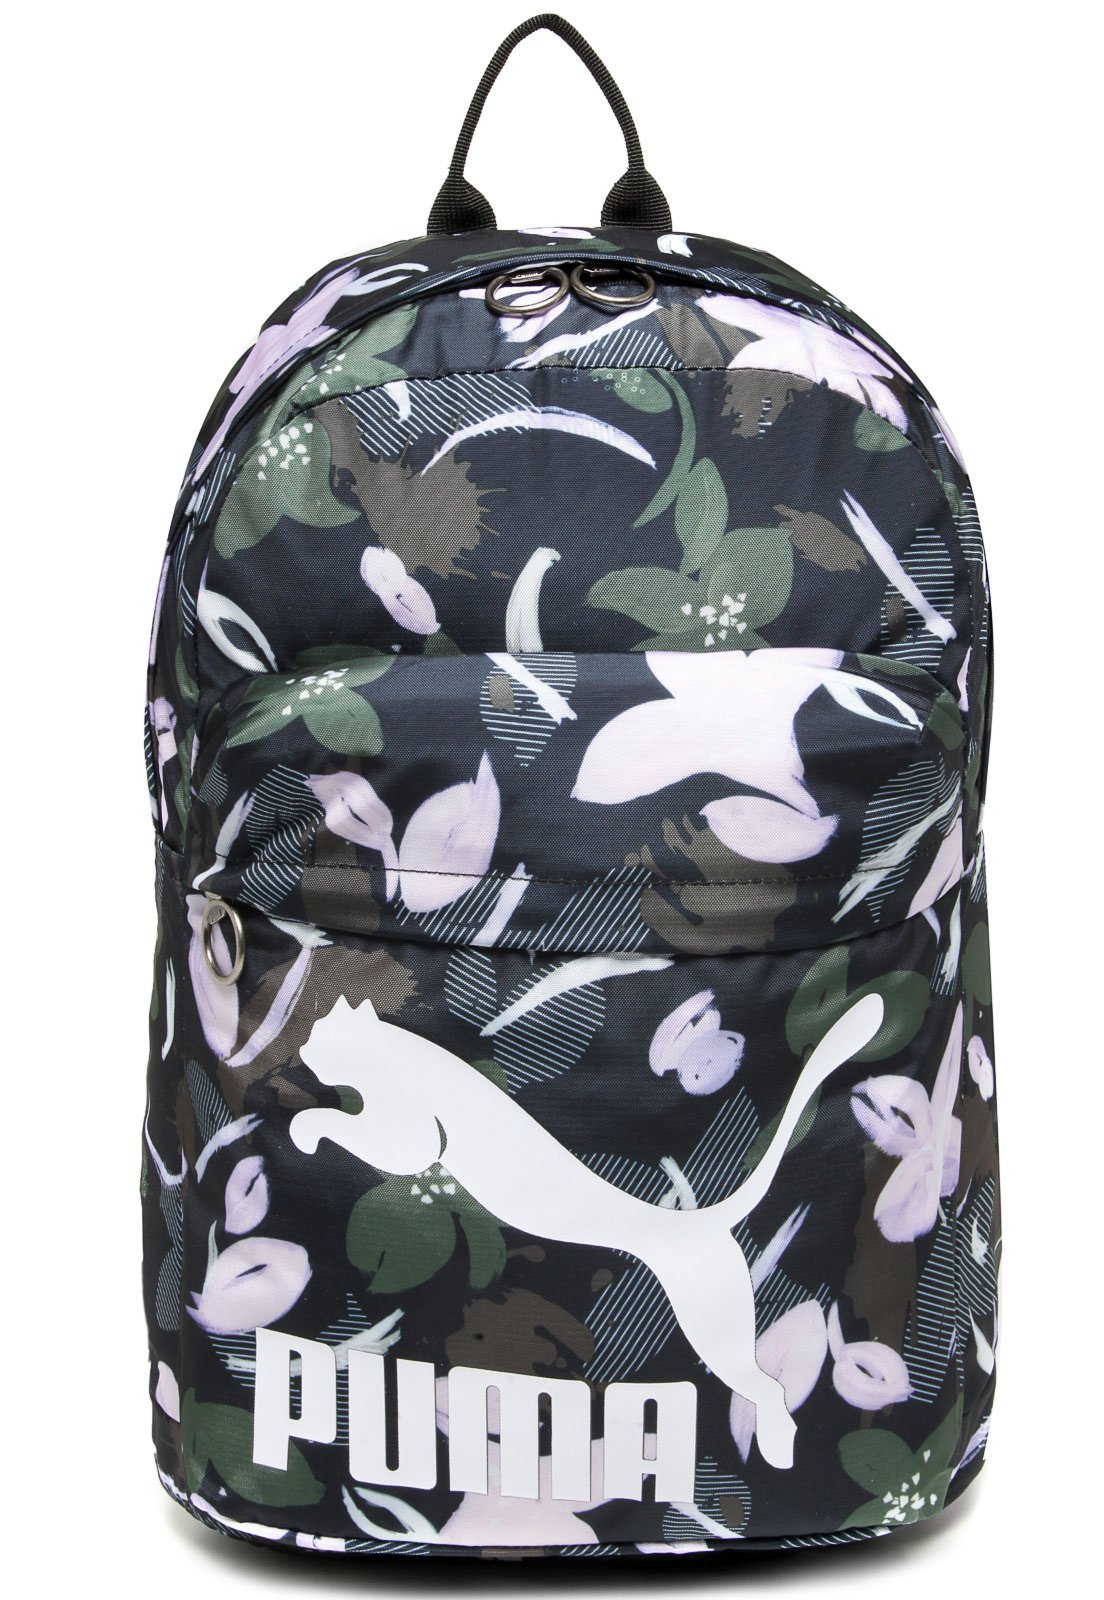 mochila puma originals backpack